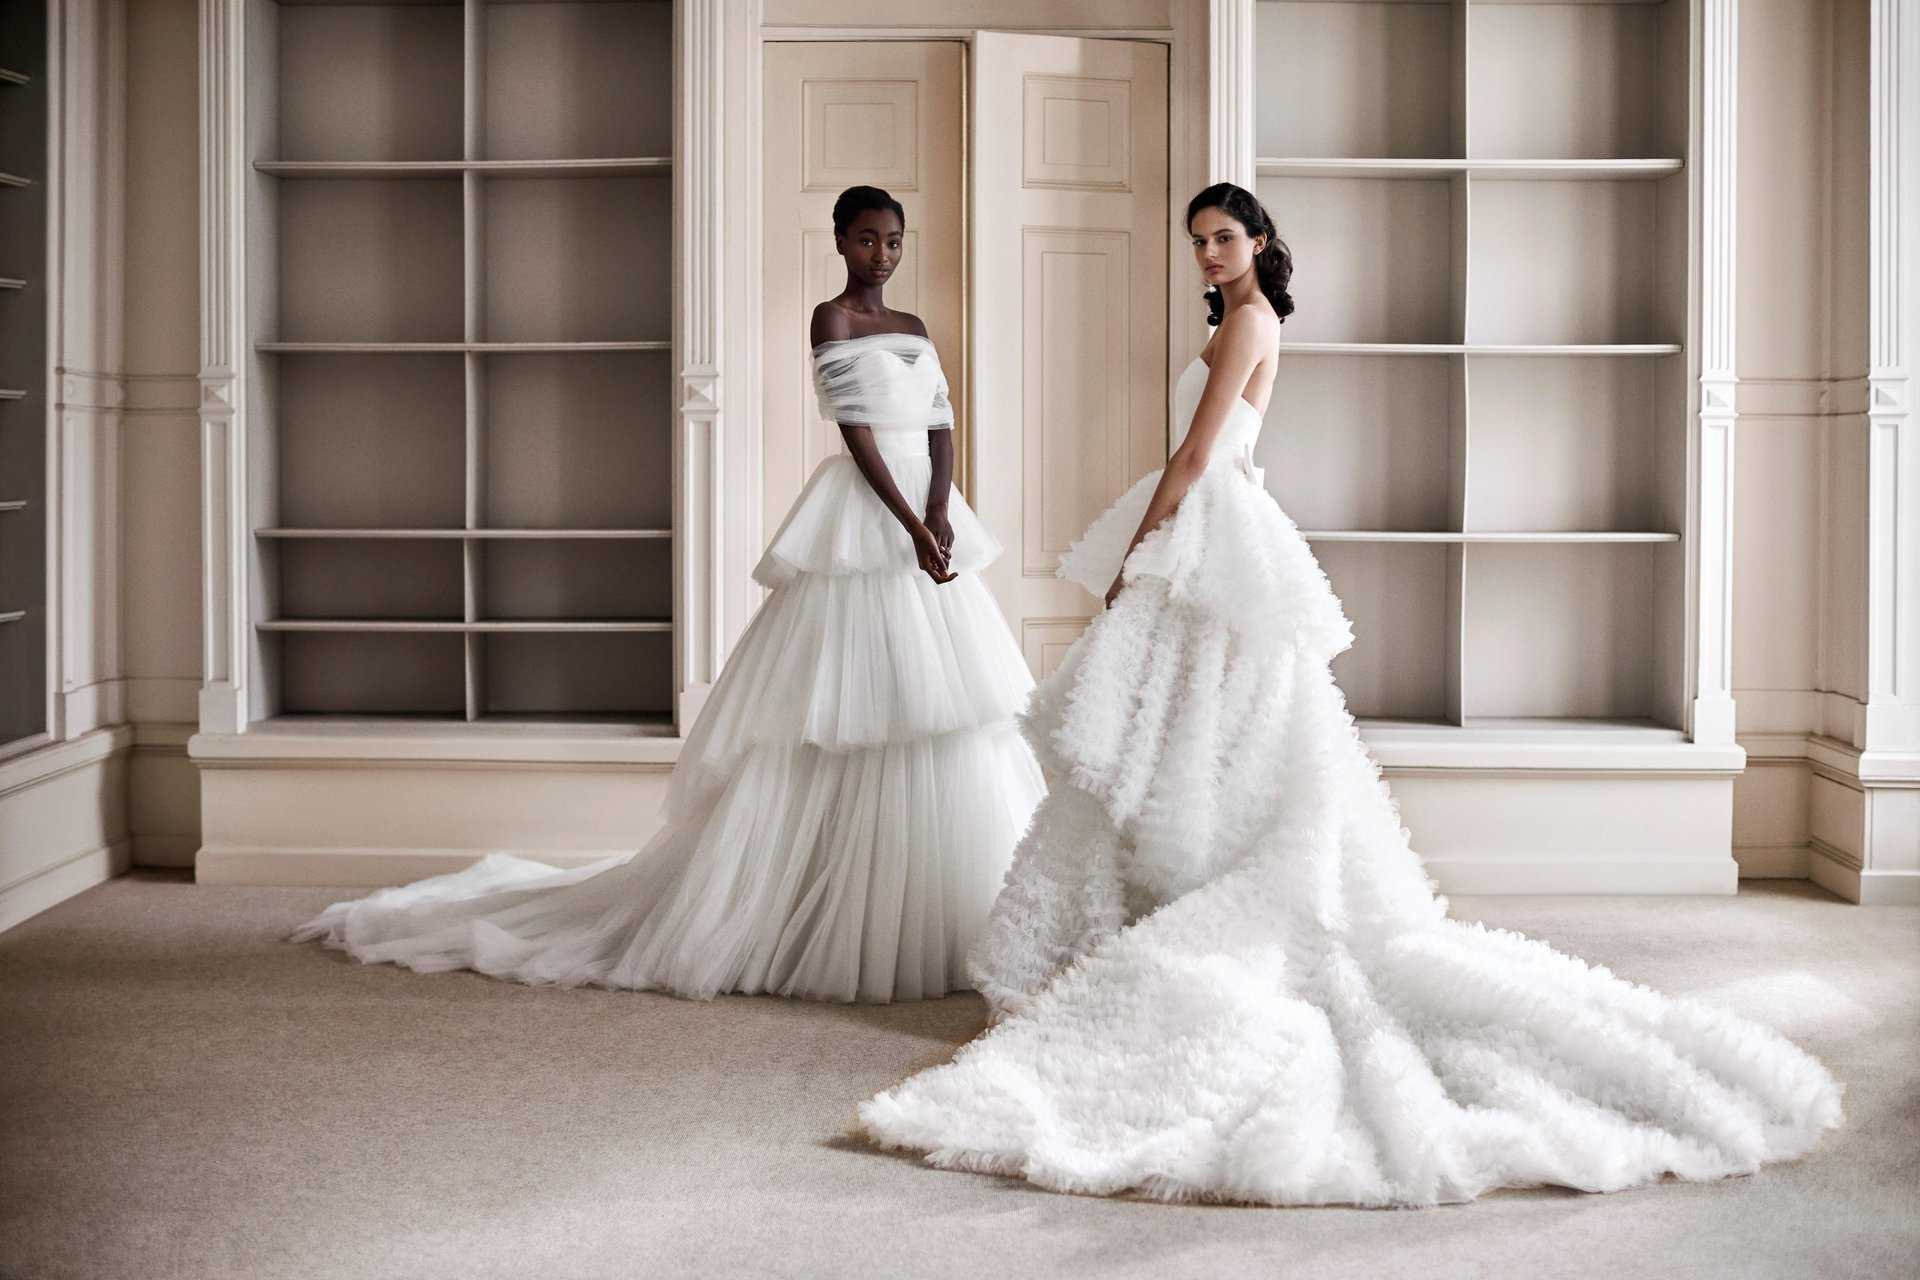 Строгое свадебное платье поможет создать образ элегантной невесты аристократического происхождения, которая ценит простоту и минимализм